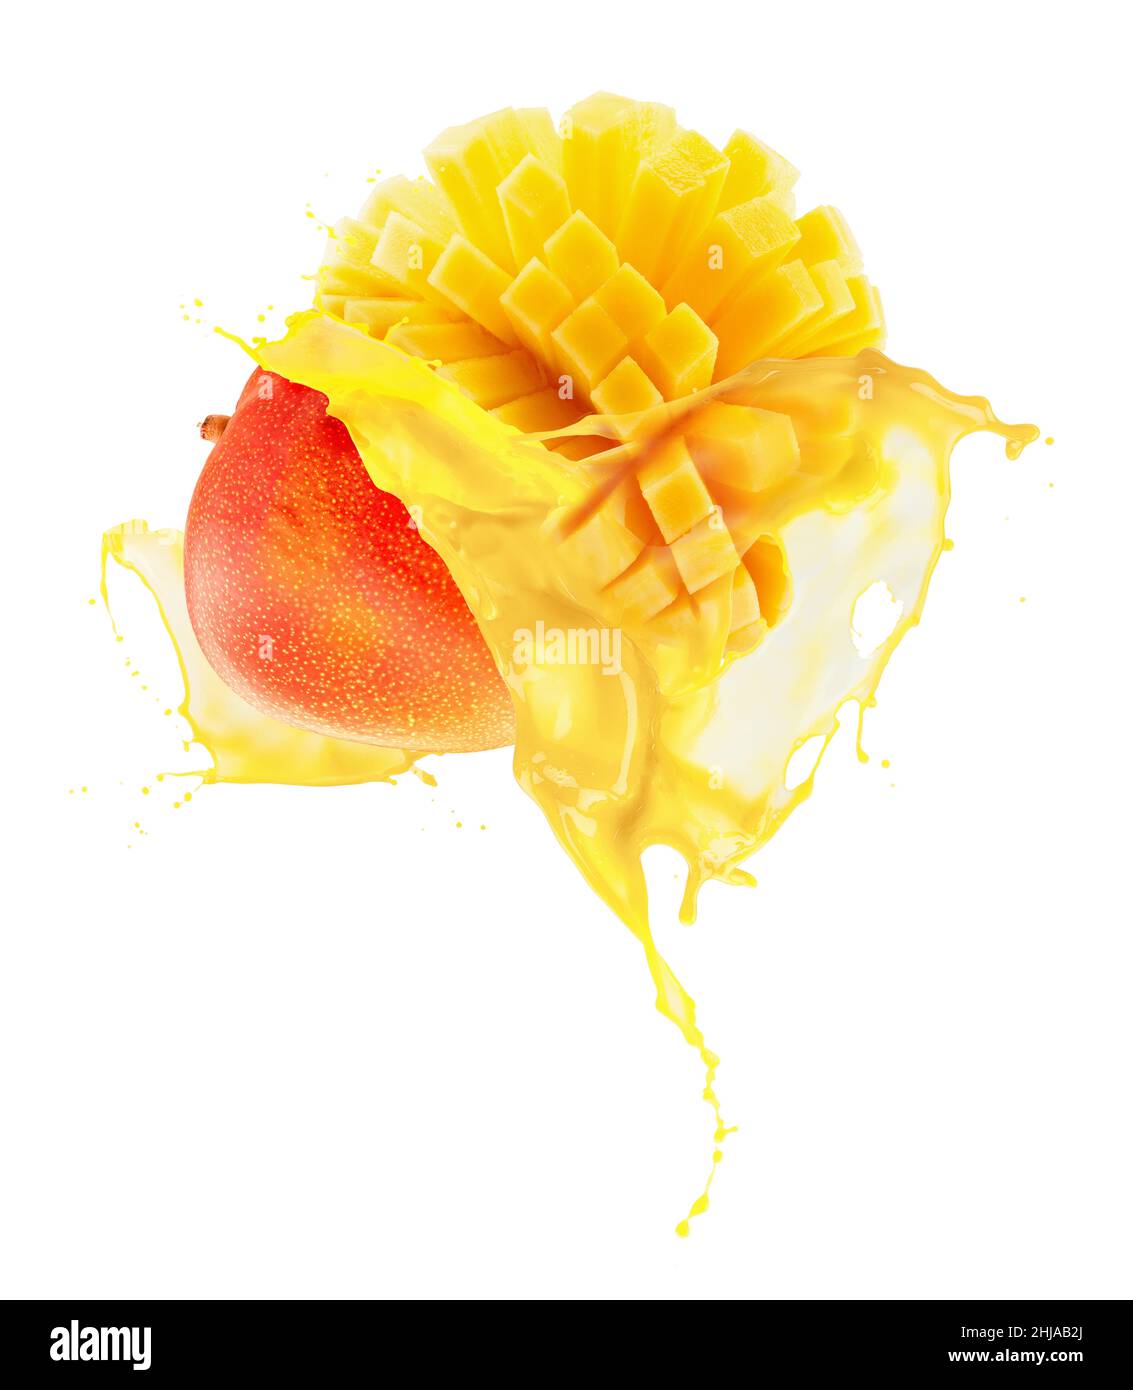 mango in juice splash isolated on a white background. Stock Photo